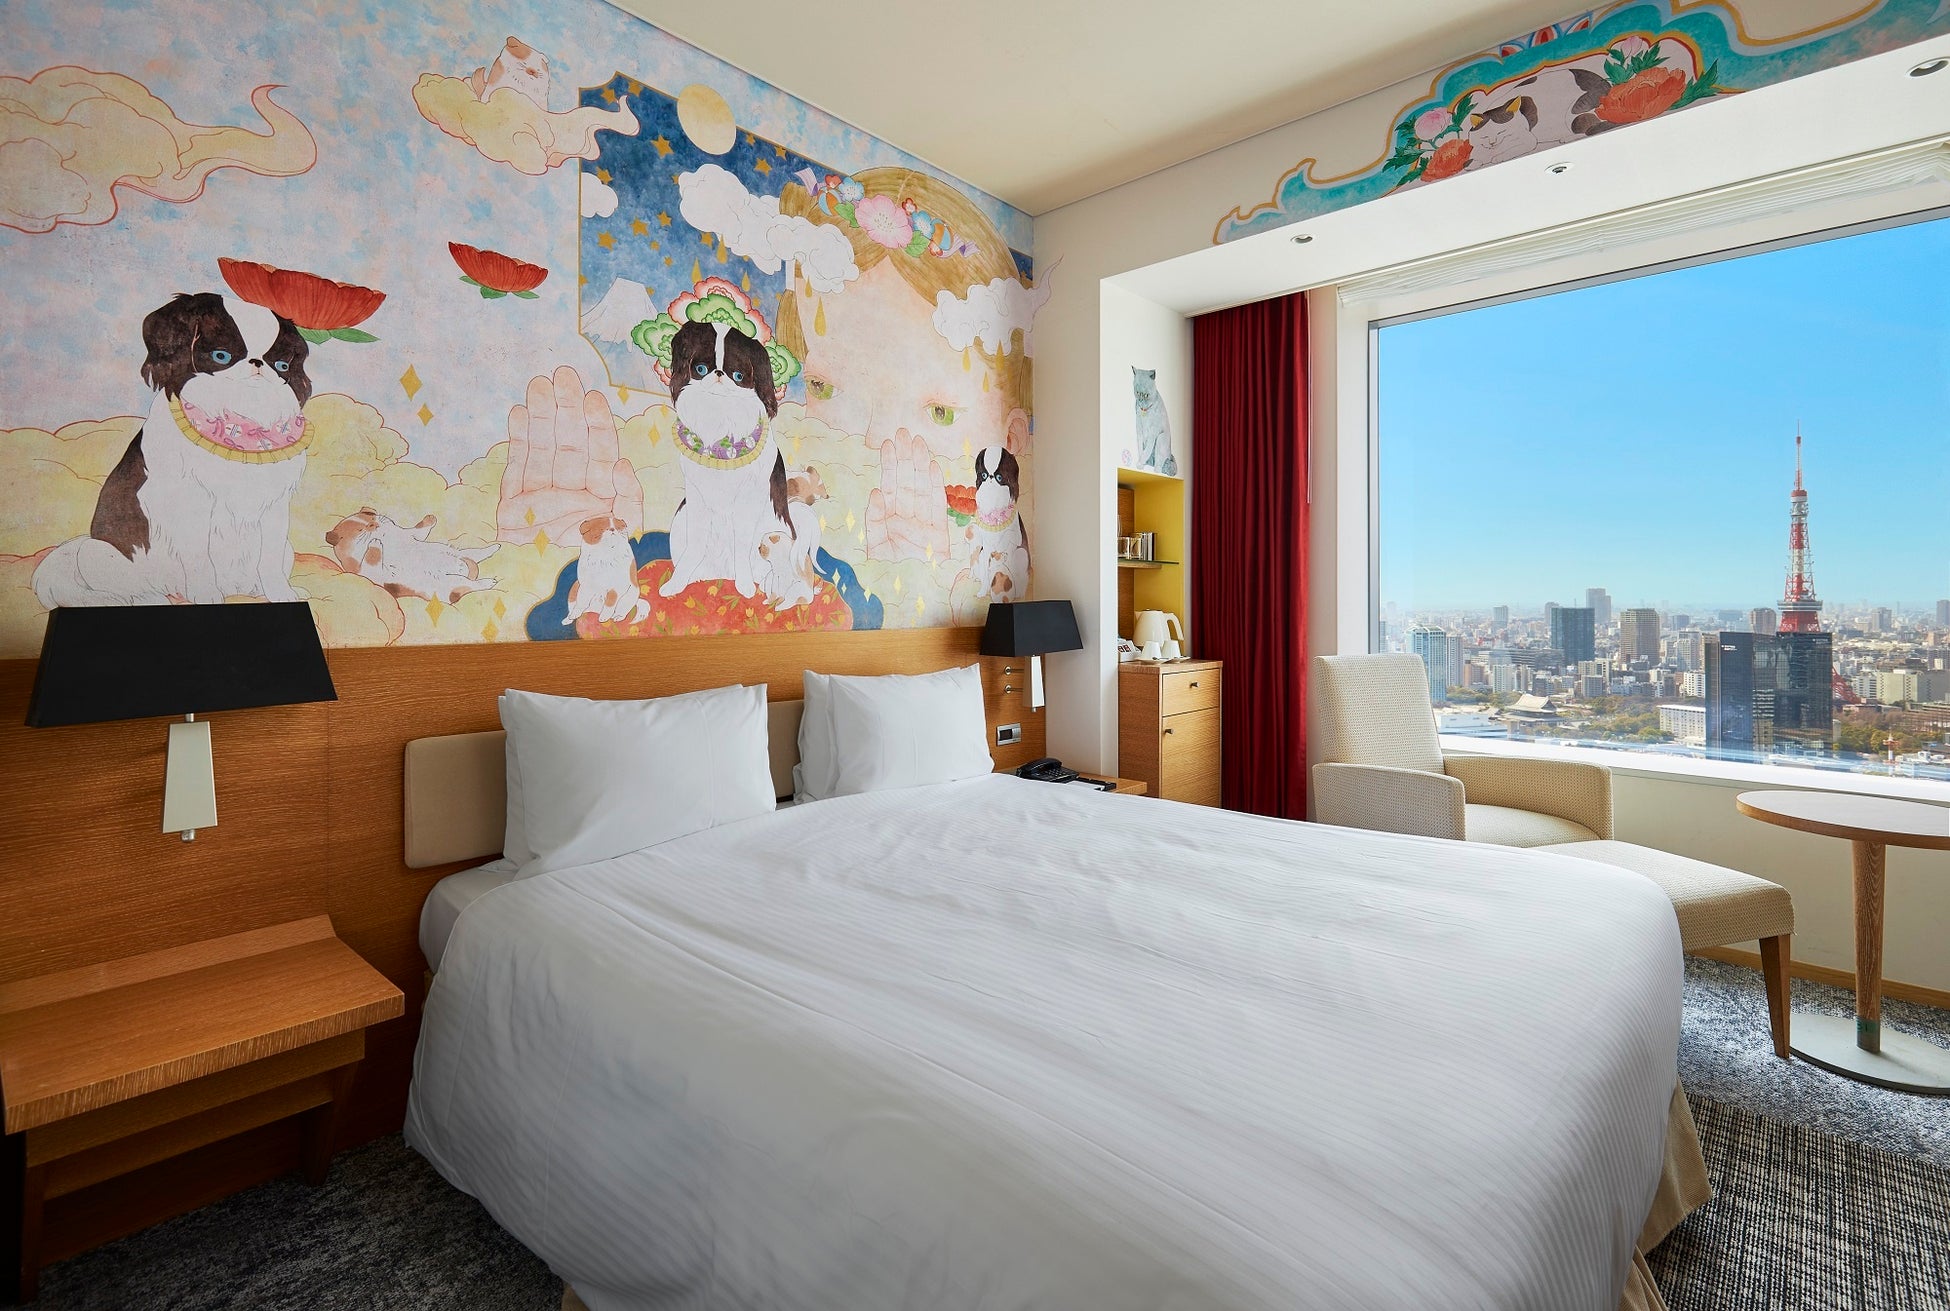 日本の「可愛い」を世界に伝える – パークホテル東京の41番目のアーティストルーム